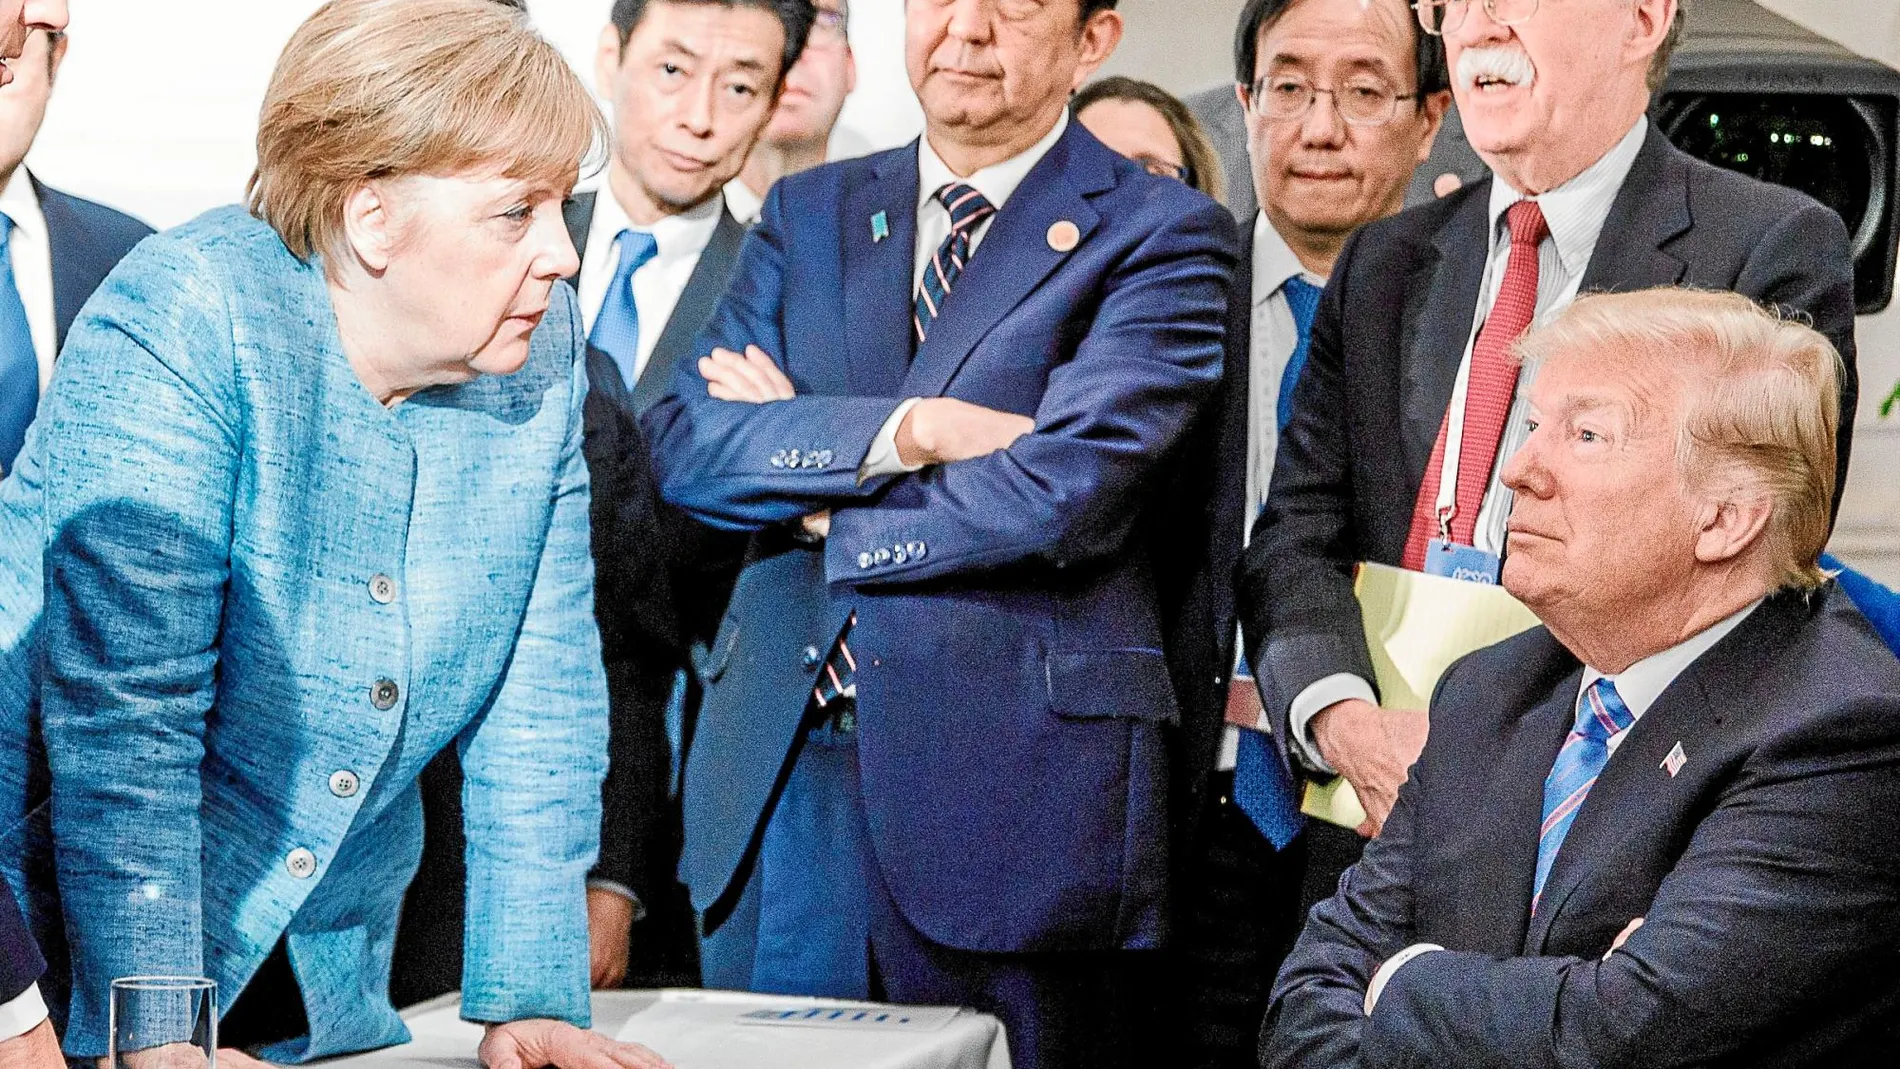 La canciller alemana, Angela Merkel, se encara a Donald Trump en un tenso encuentro en el G-7 celebrado en Quebec en junio de este año